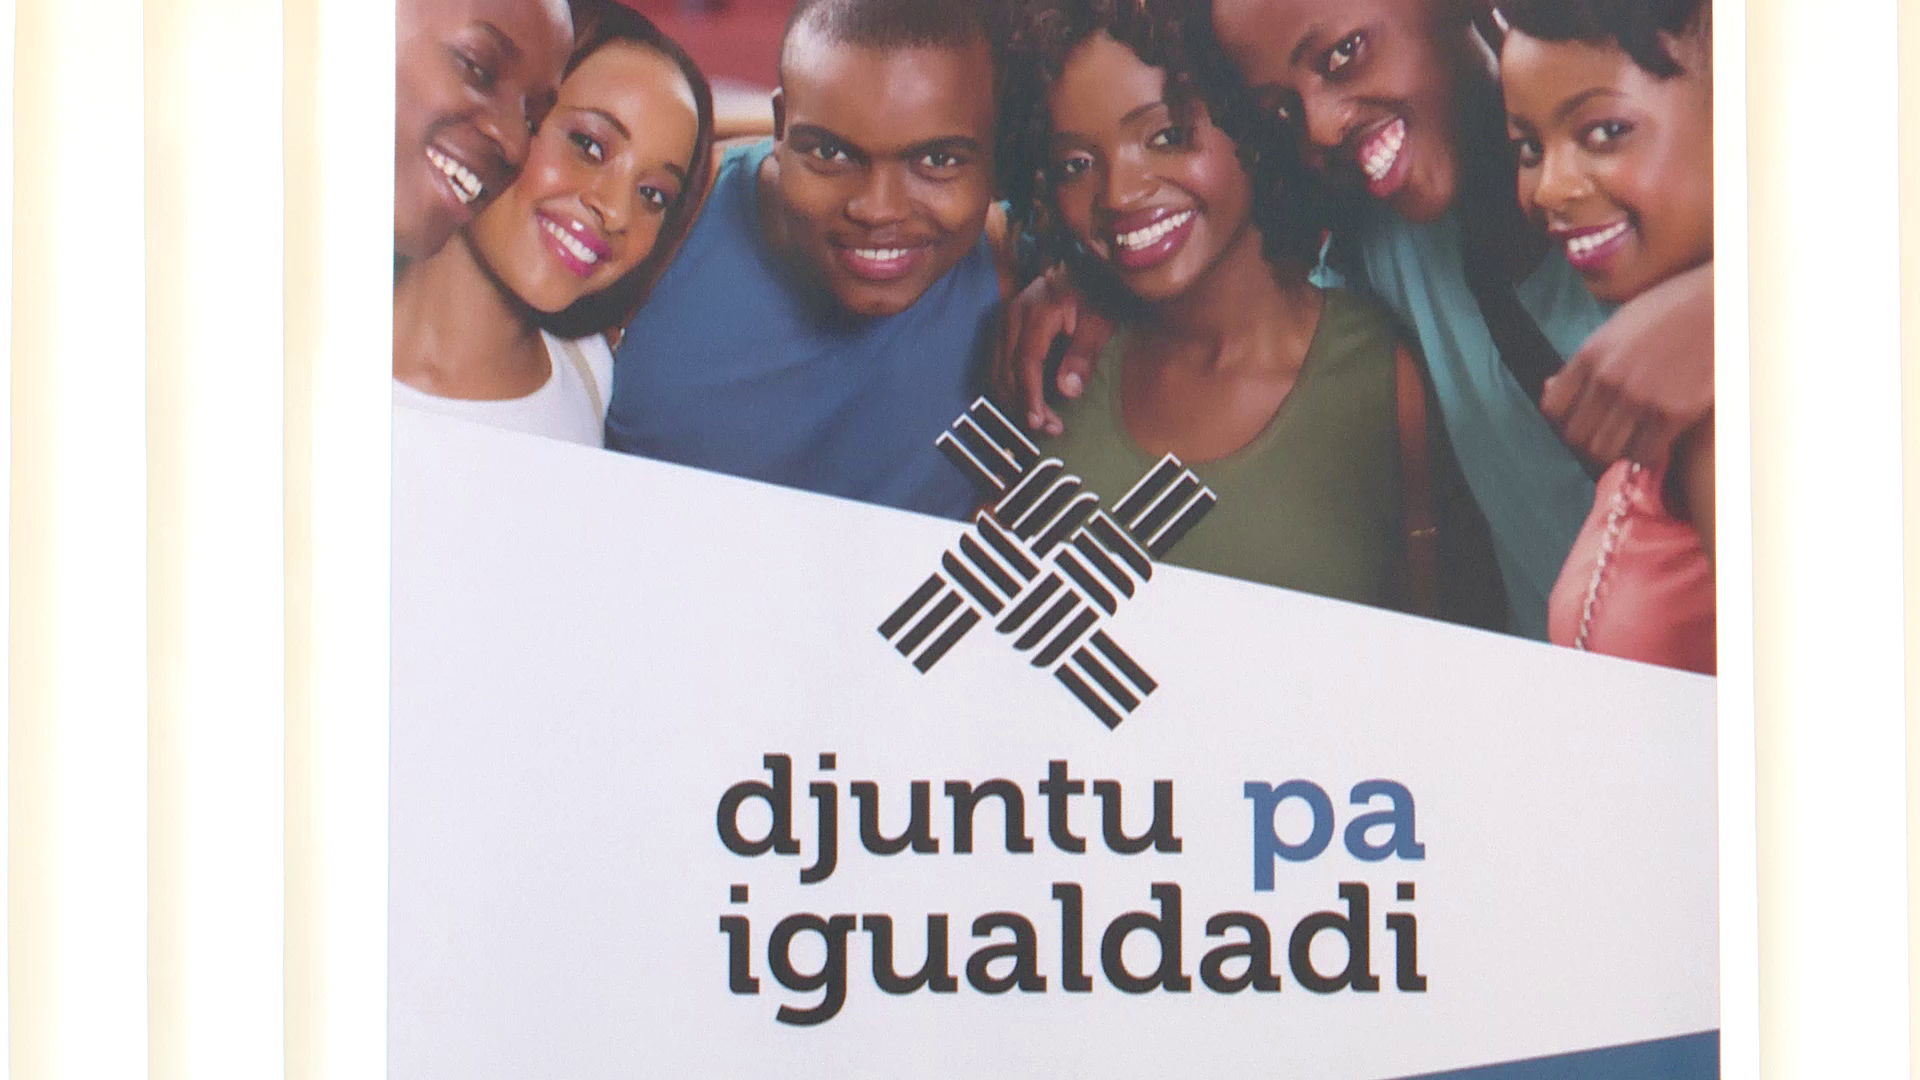 ACLCVBG apresenta projecto “Djunto pa Igualdadi”